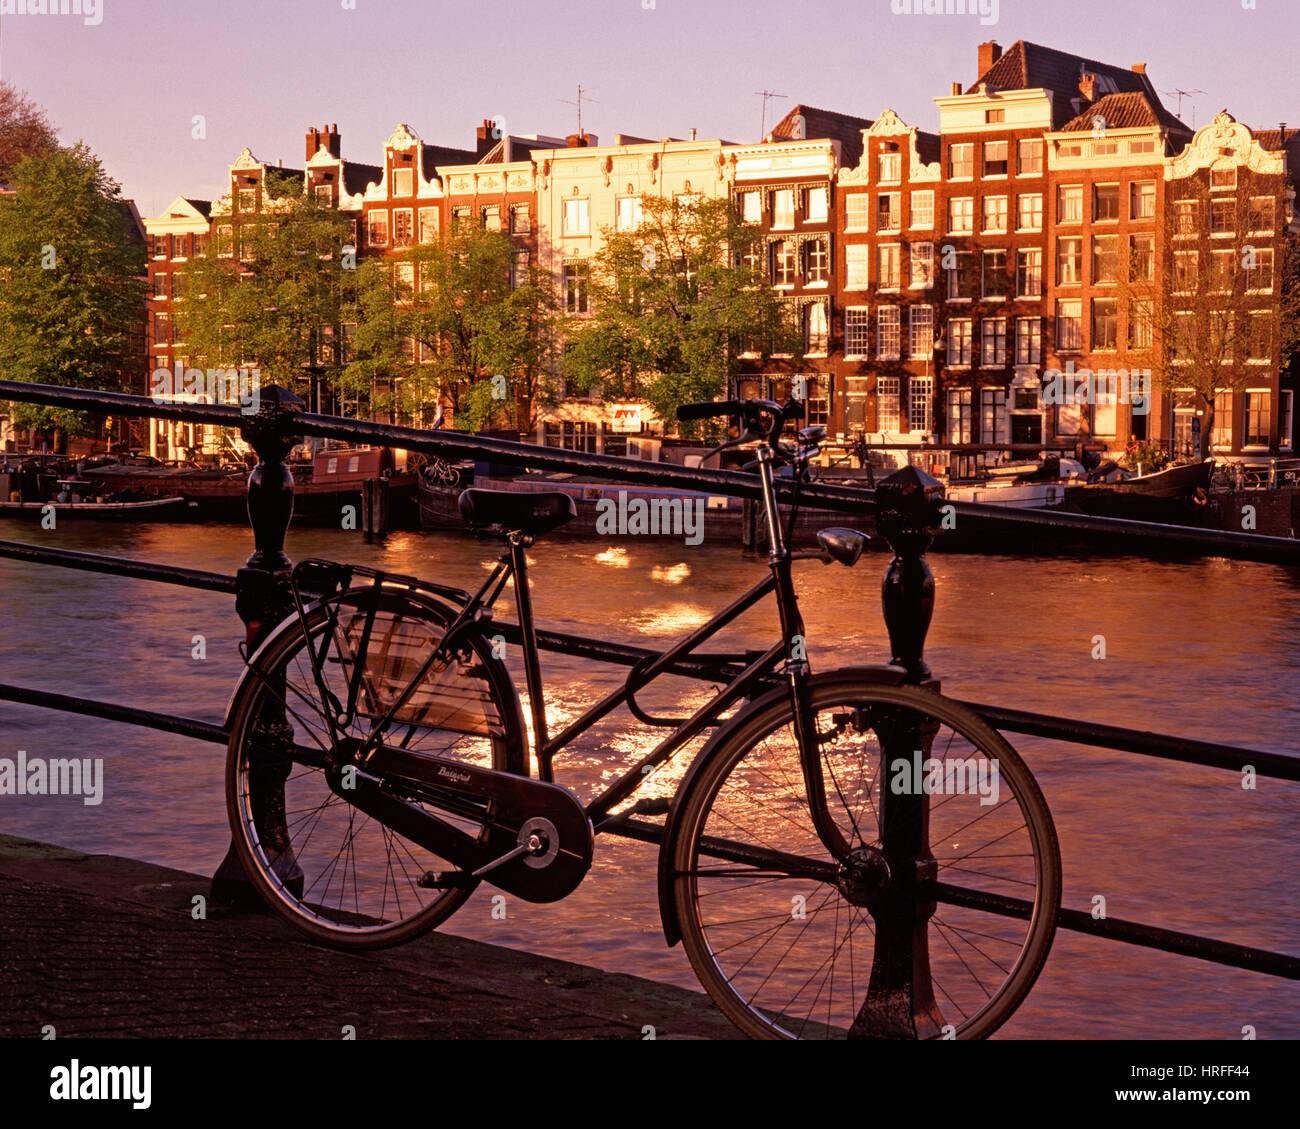 Location sur un pont-canal au coucher du soleil, Amsterdam, Hollande, Pays-Bas. Banque D'Images